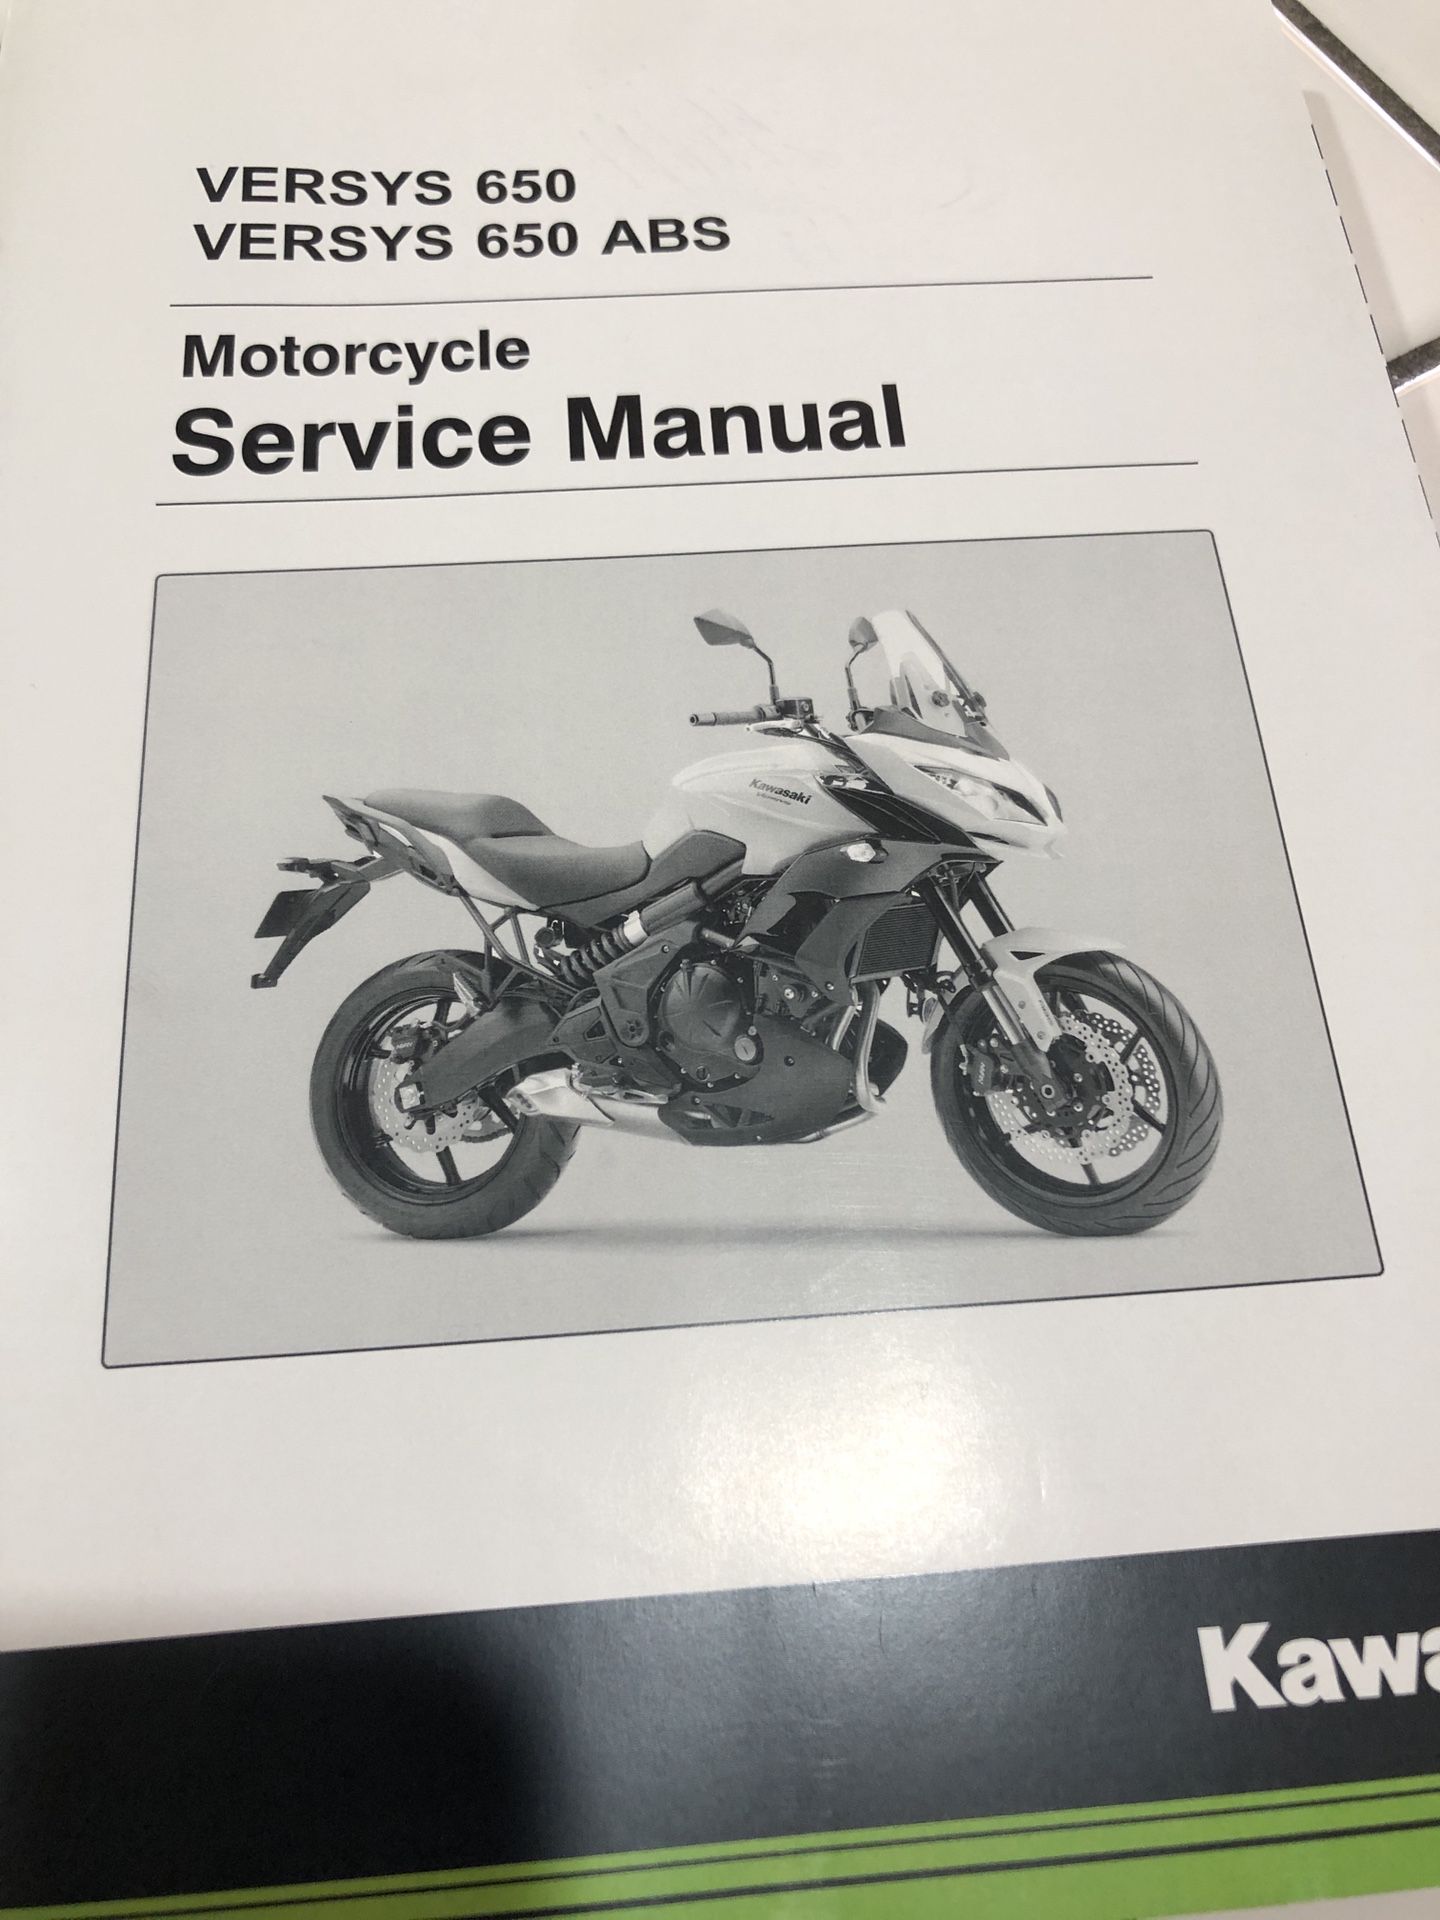 Kawasaki Versys 650 motorcycle service manual. Brand new.